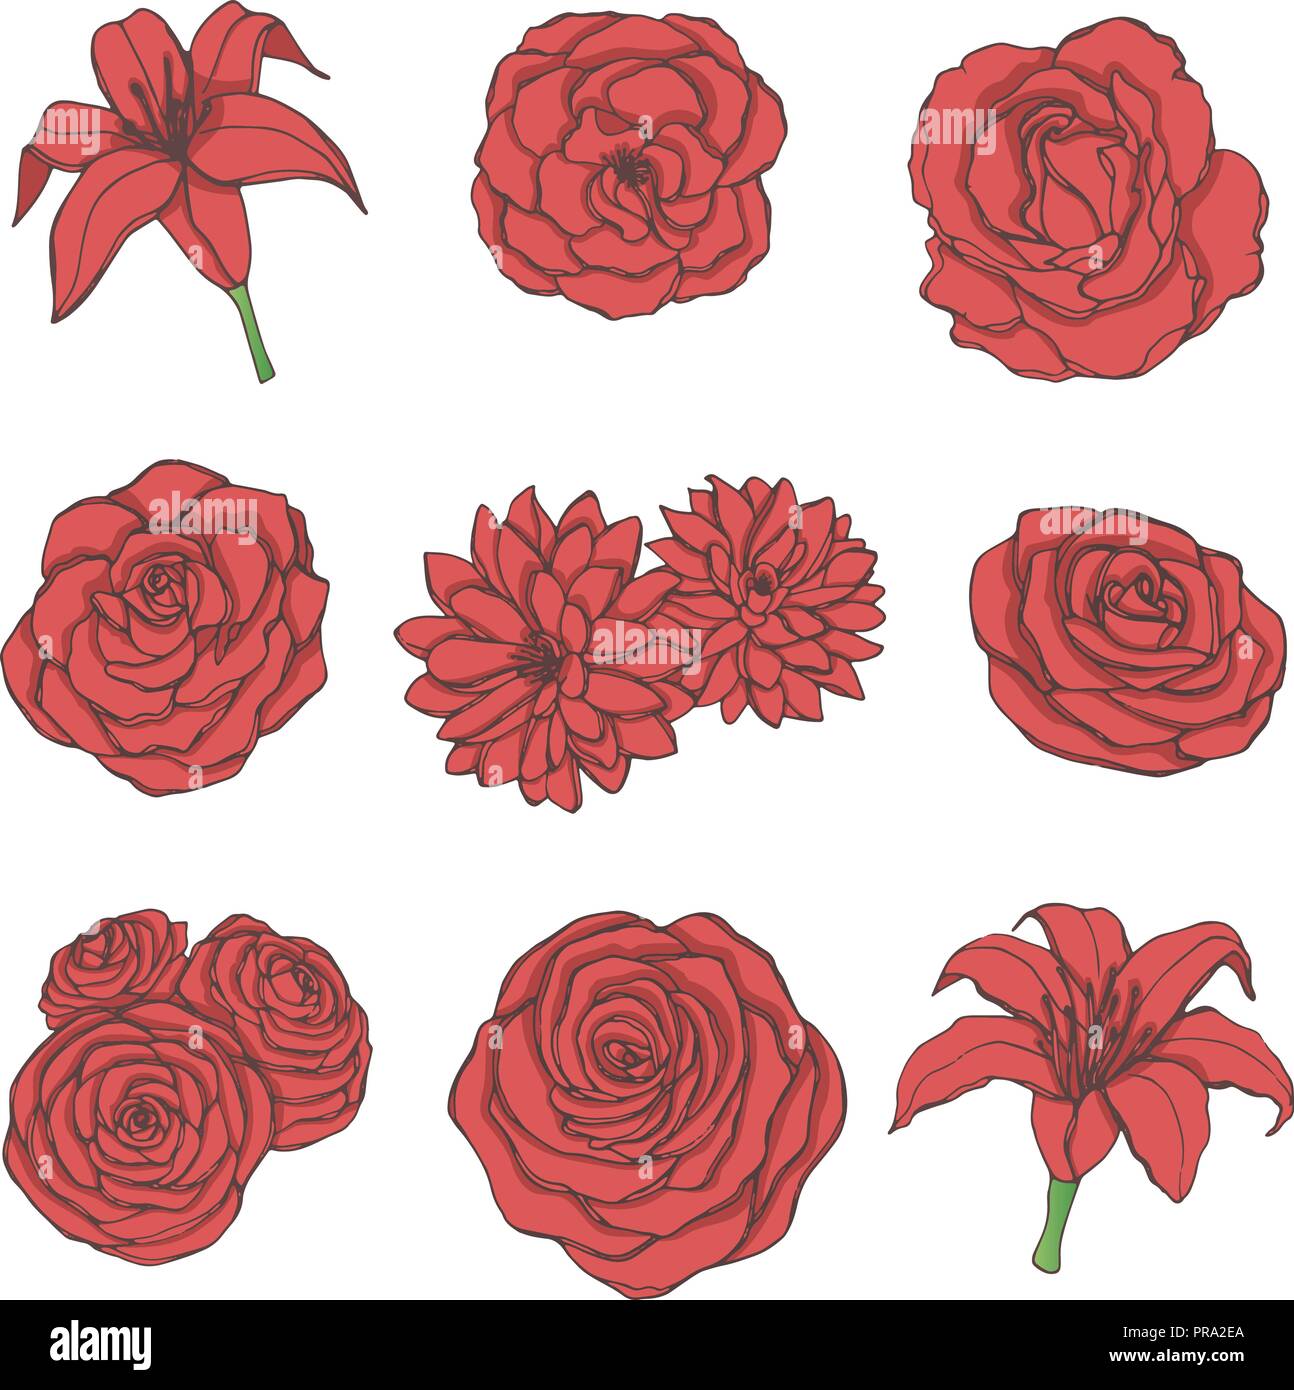 Disegnata a mano vector set di Red Rose, giglio, peonia e fiori di crisantemo line art isolato su uno sfondo bianco. Vintage elementi floreali per vostro d Illustrazione Vettoriale